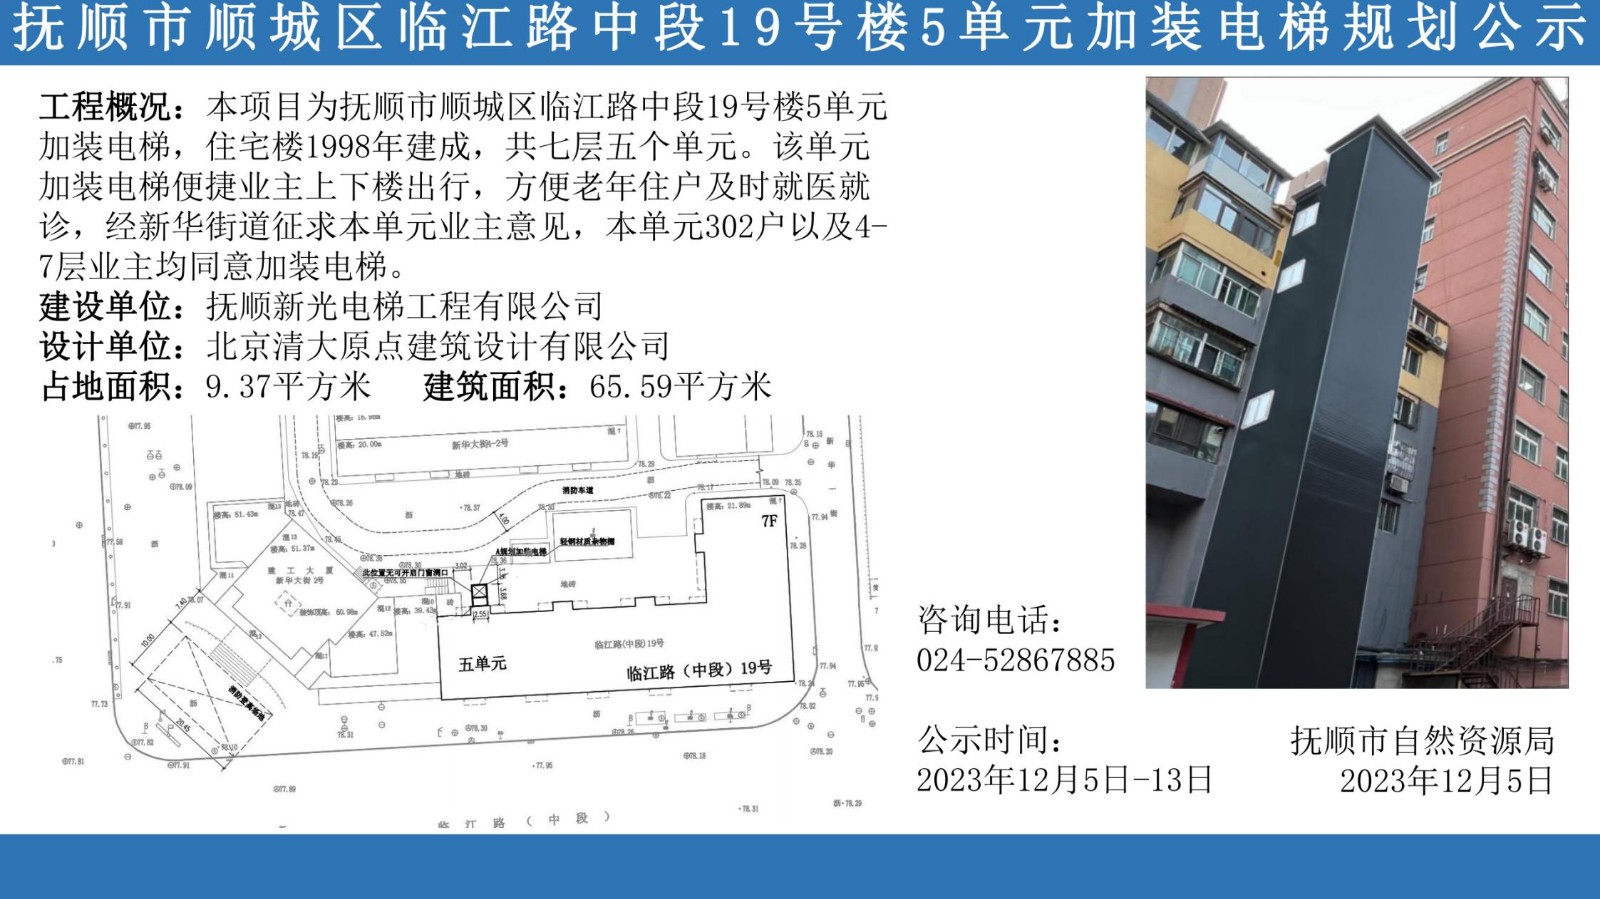 抚顺市顺城区临江路中段19号楼5单元加装电梯规划公示_00.jpg